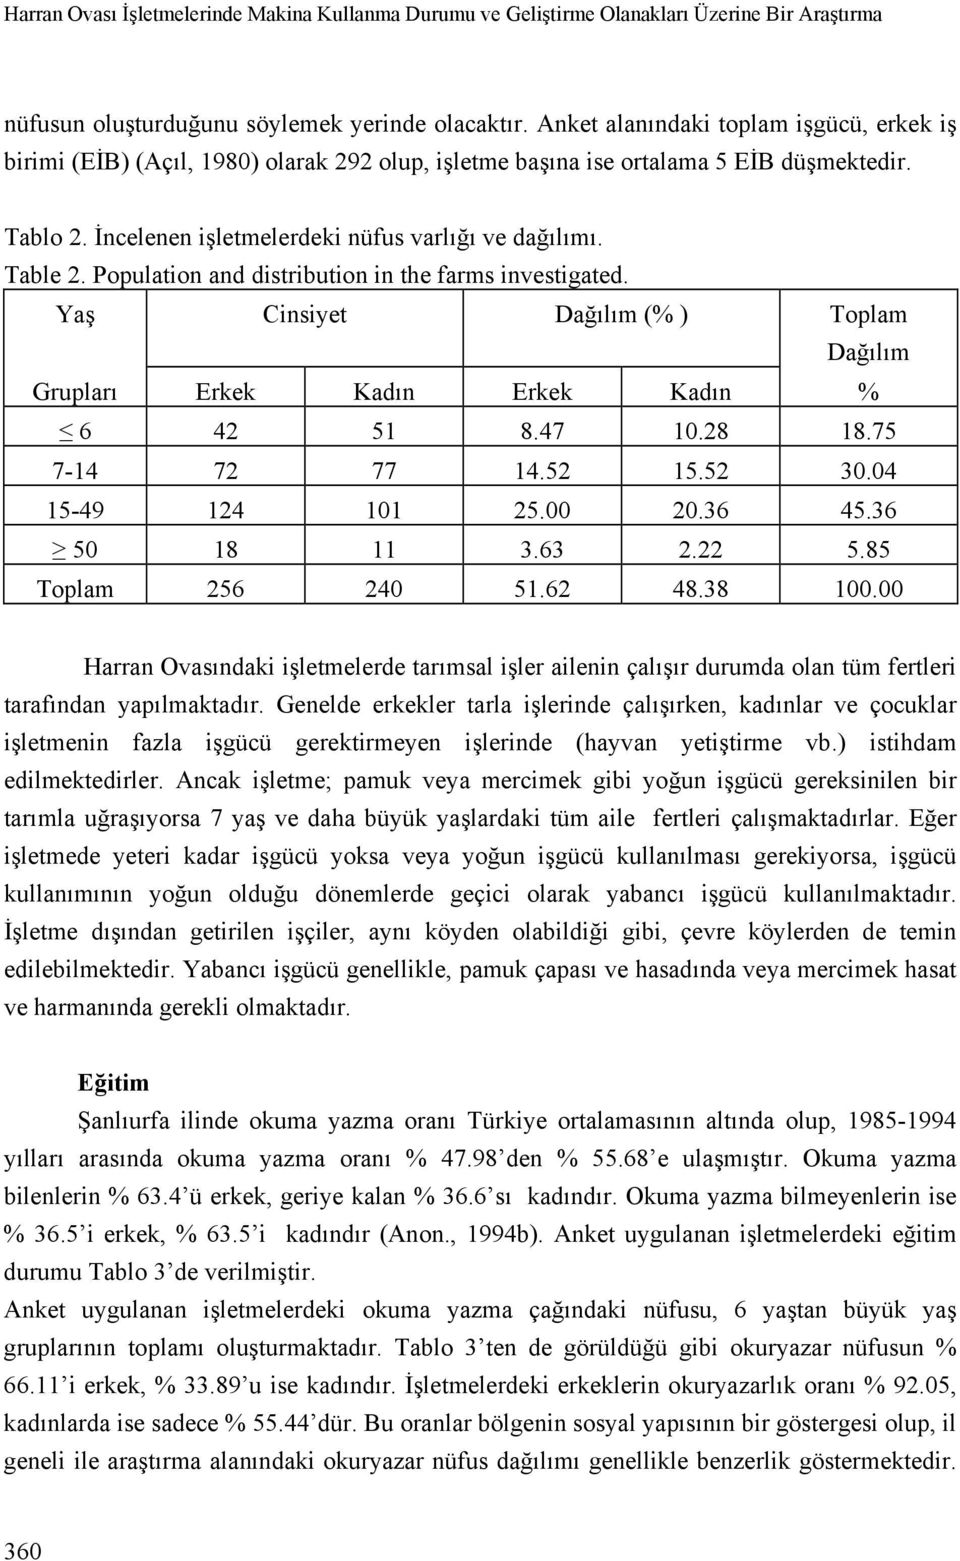 Population and distribution in the farms investigated. Yaş Cinsiyet Dağılım (% ) Toplam Dağılım Grupları Erkek Kadın Erkek Kadın % 6 42 51 8.47 10.28 18.75 7-14 72 77 14.52 15.52 30.